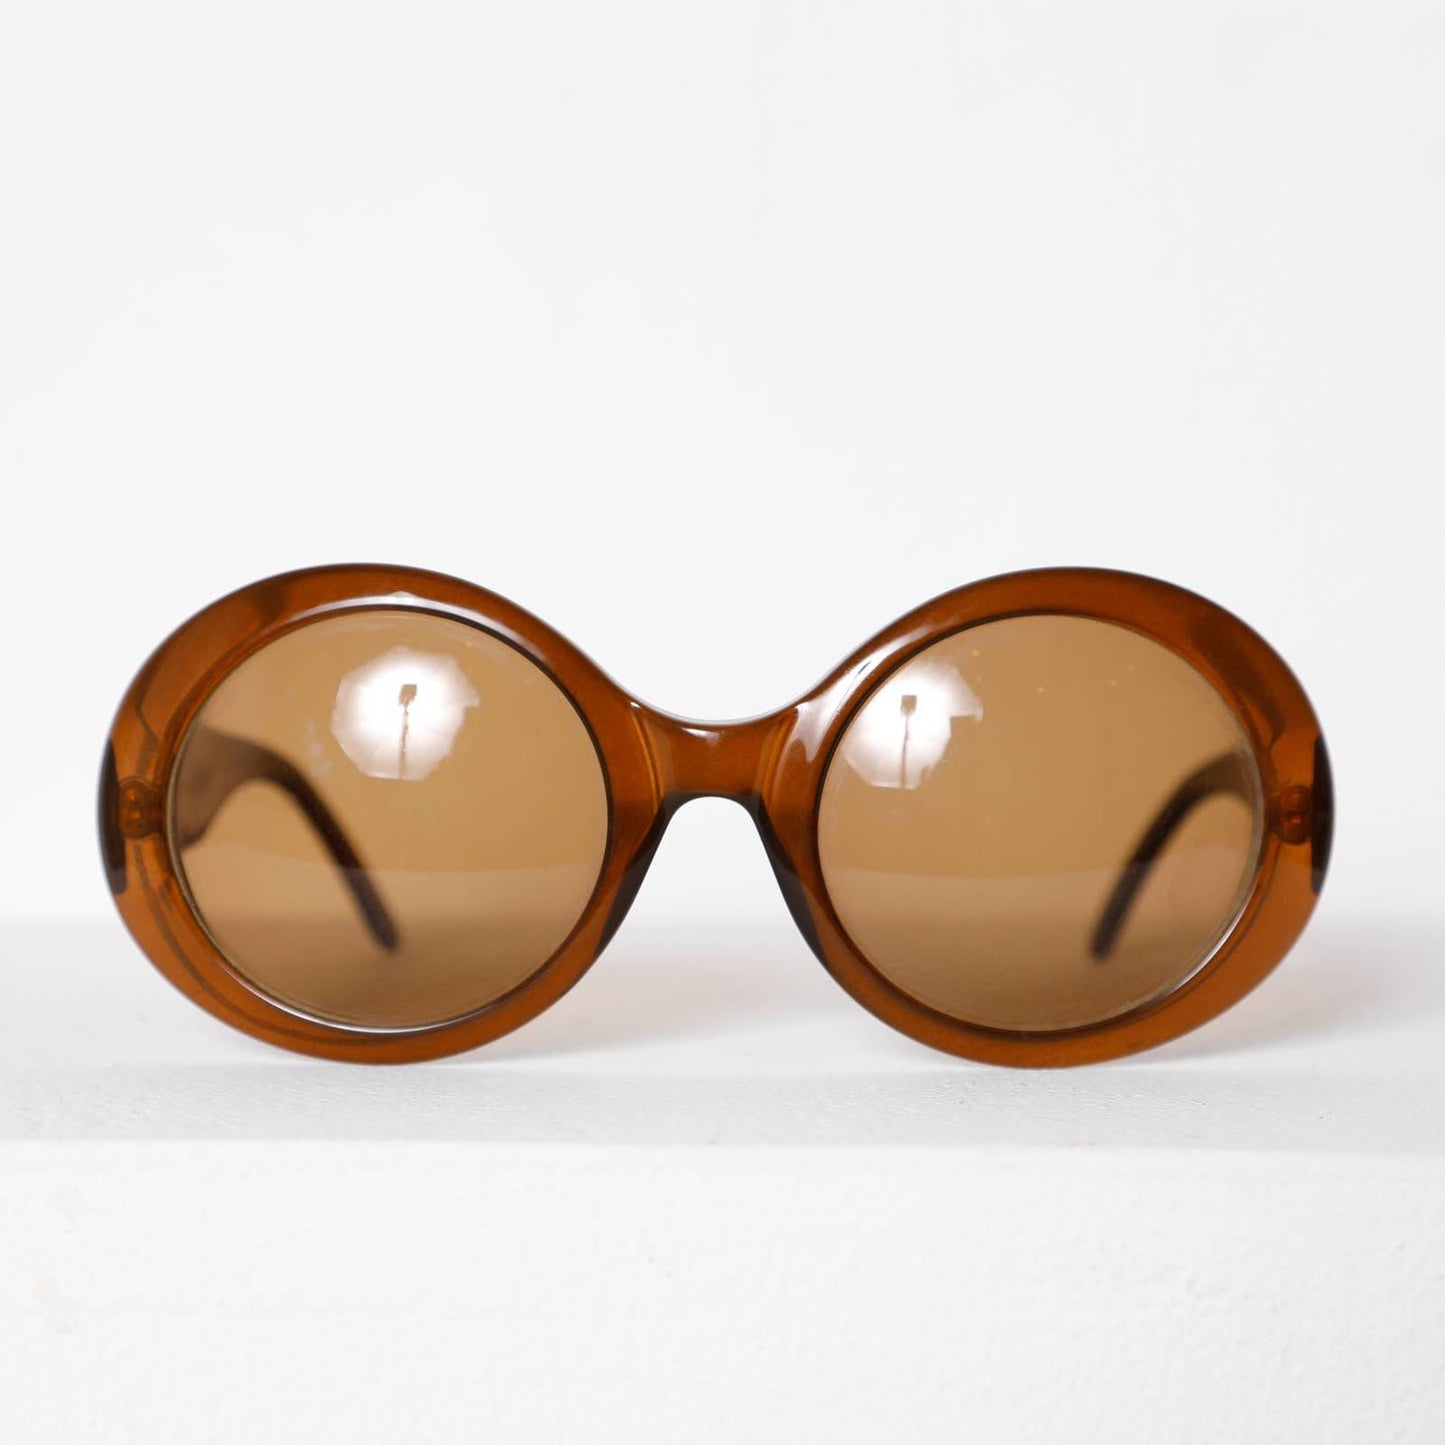 GUCCI Brown Round Retro Style Sunglasses